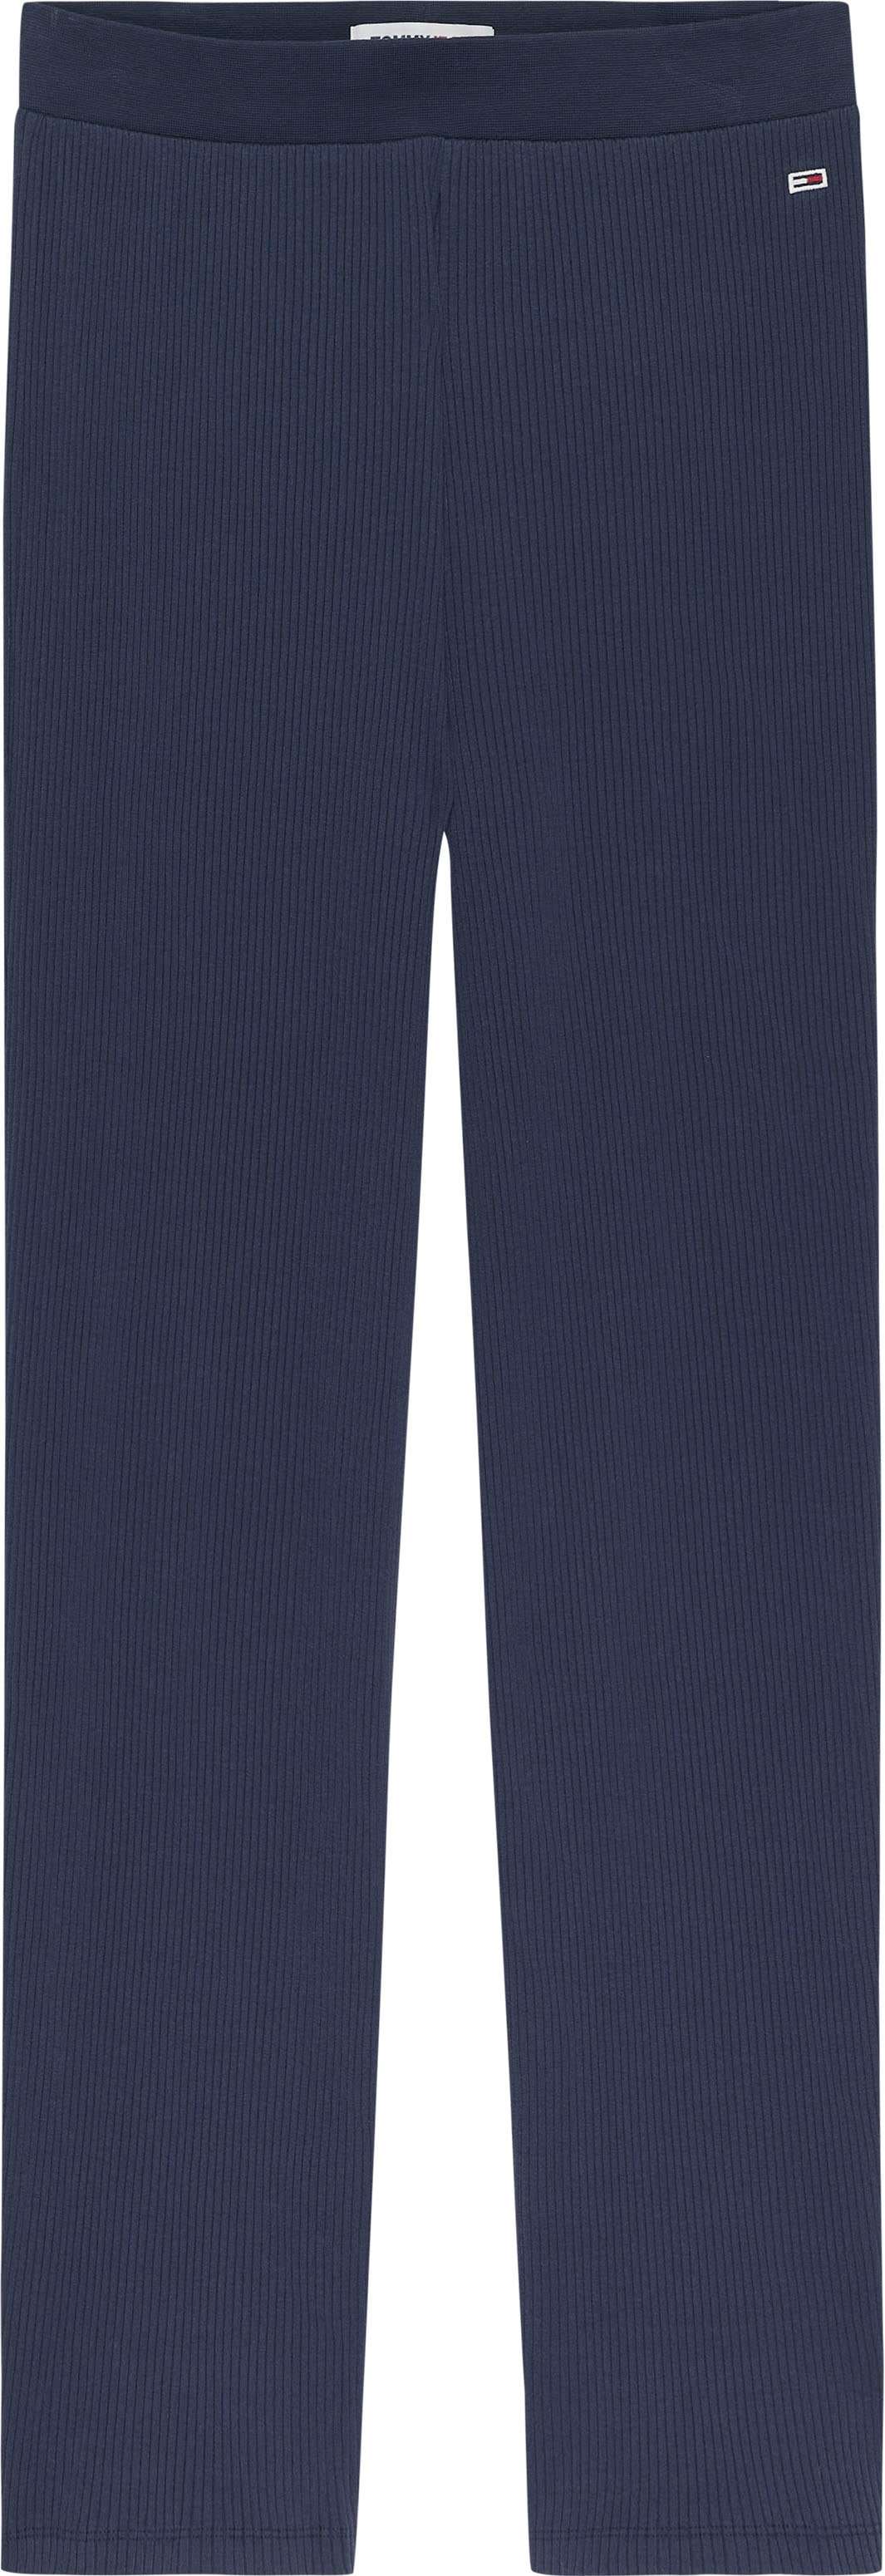 Трикотажные брюки с вышивкой логотипа.